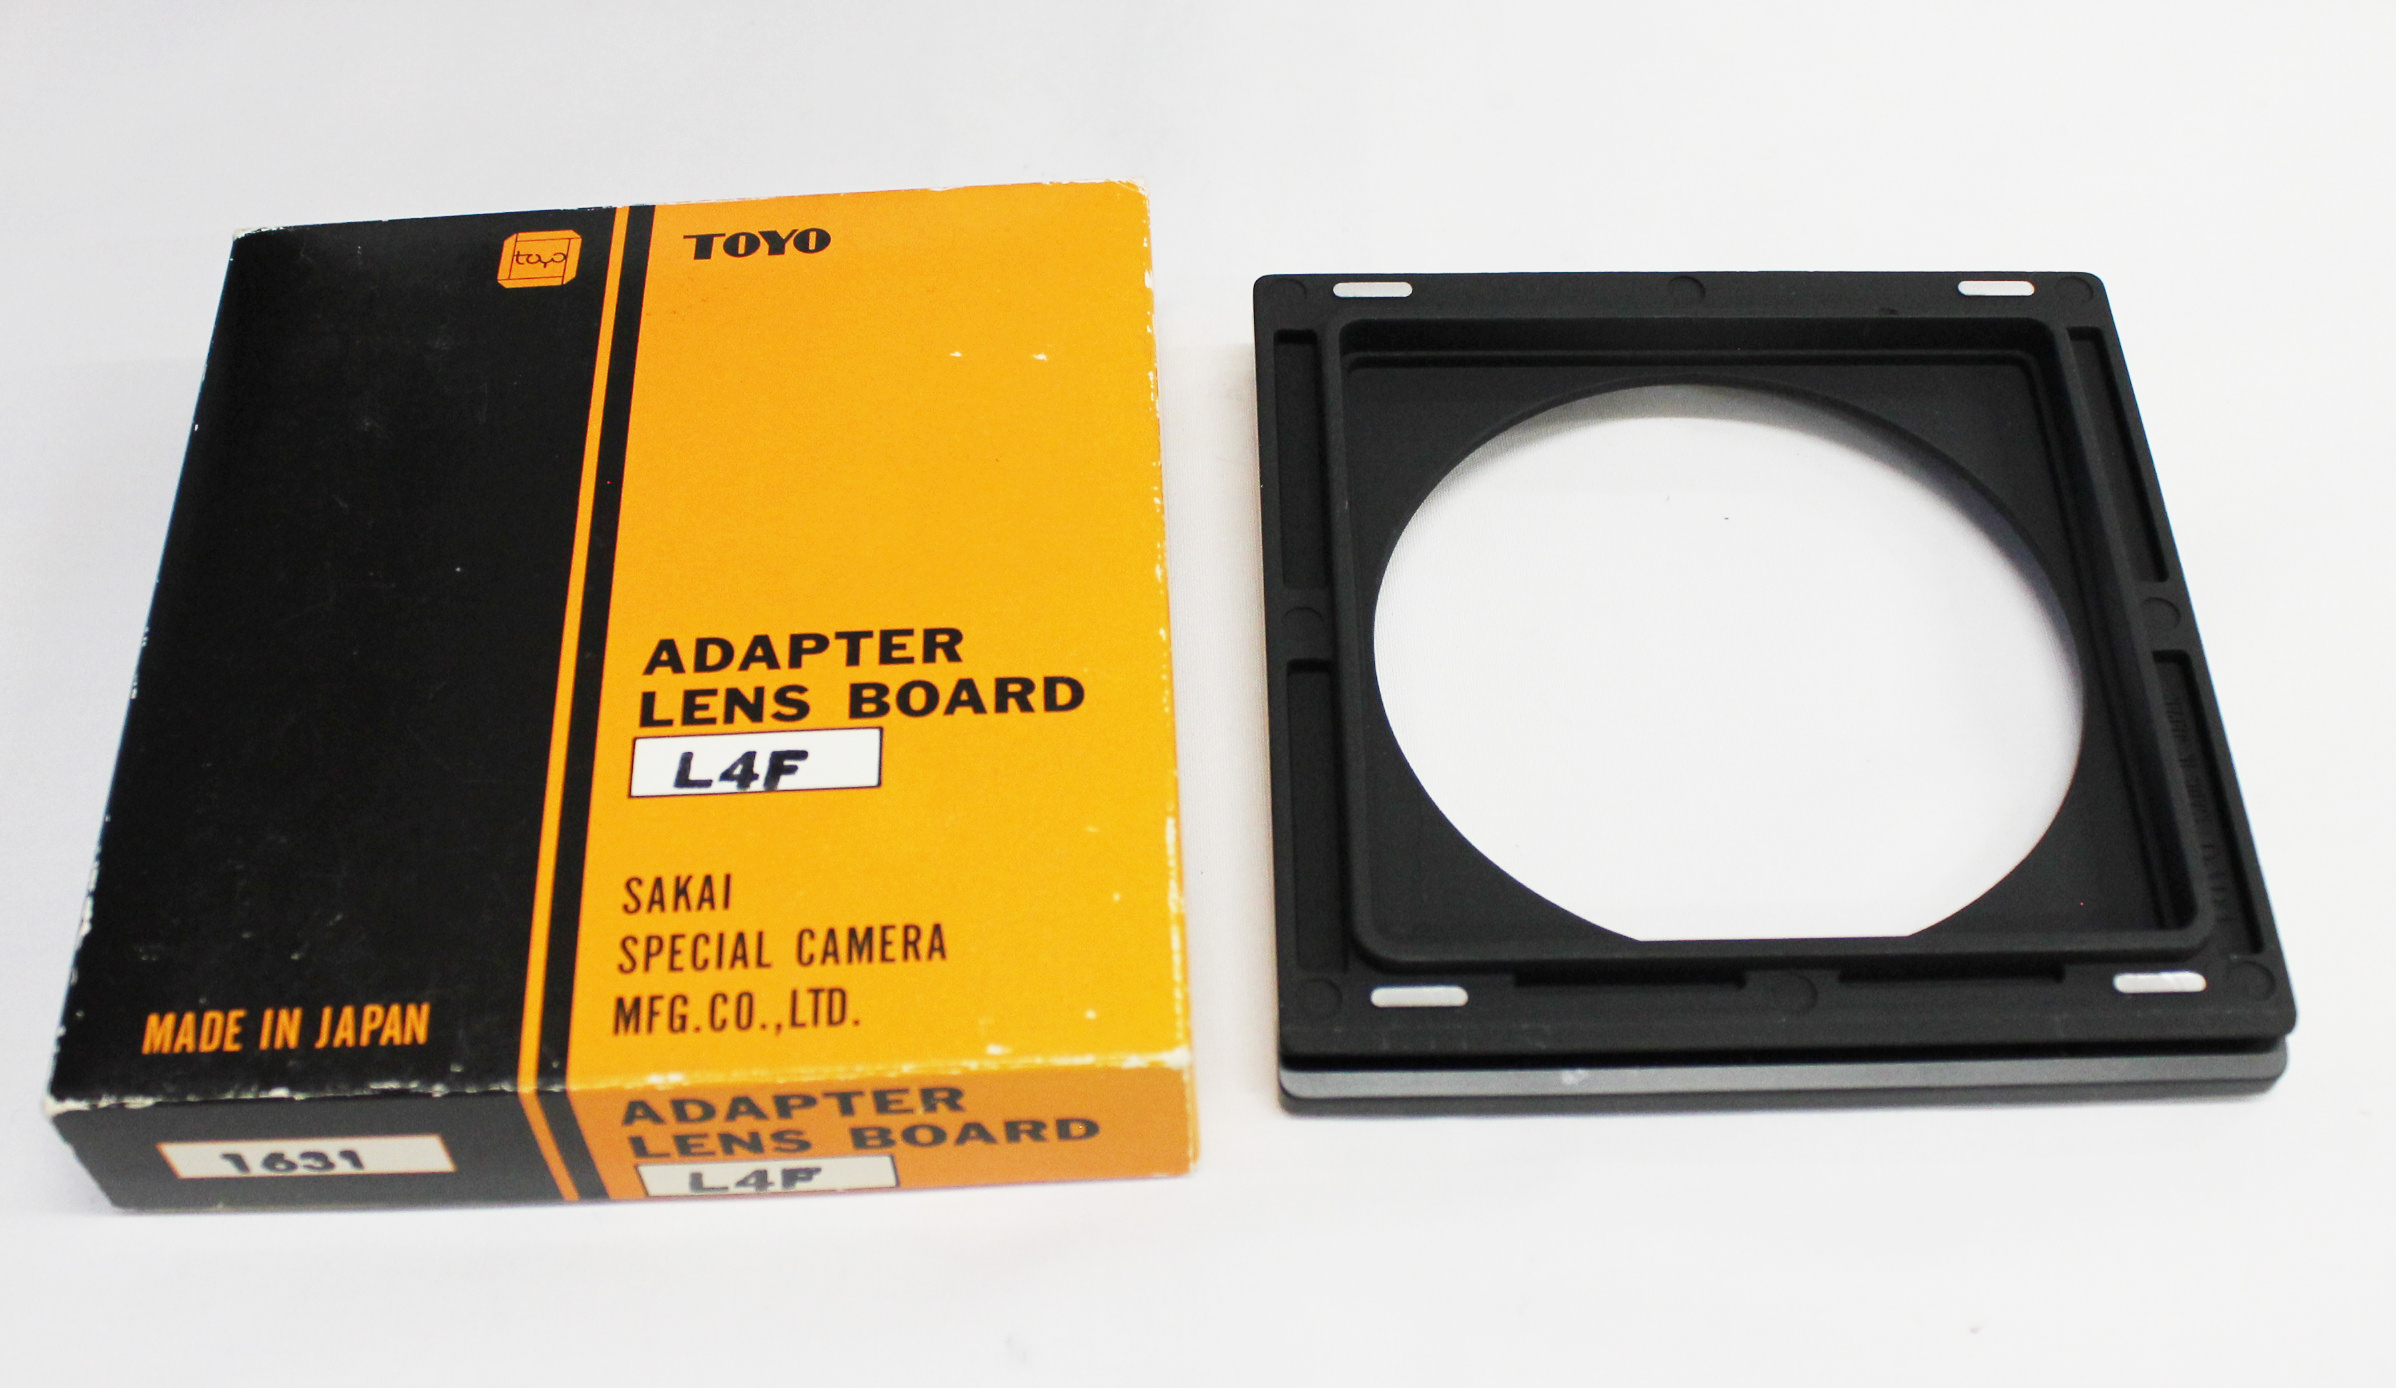 Japan Used Camera Shop | [Near Mint] Toyo Linhof Lens Board Adapter No.1631 AL4F for Toyo Field 45A 45A II from Japan 